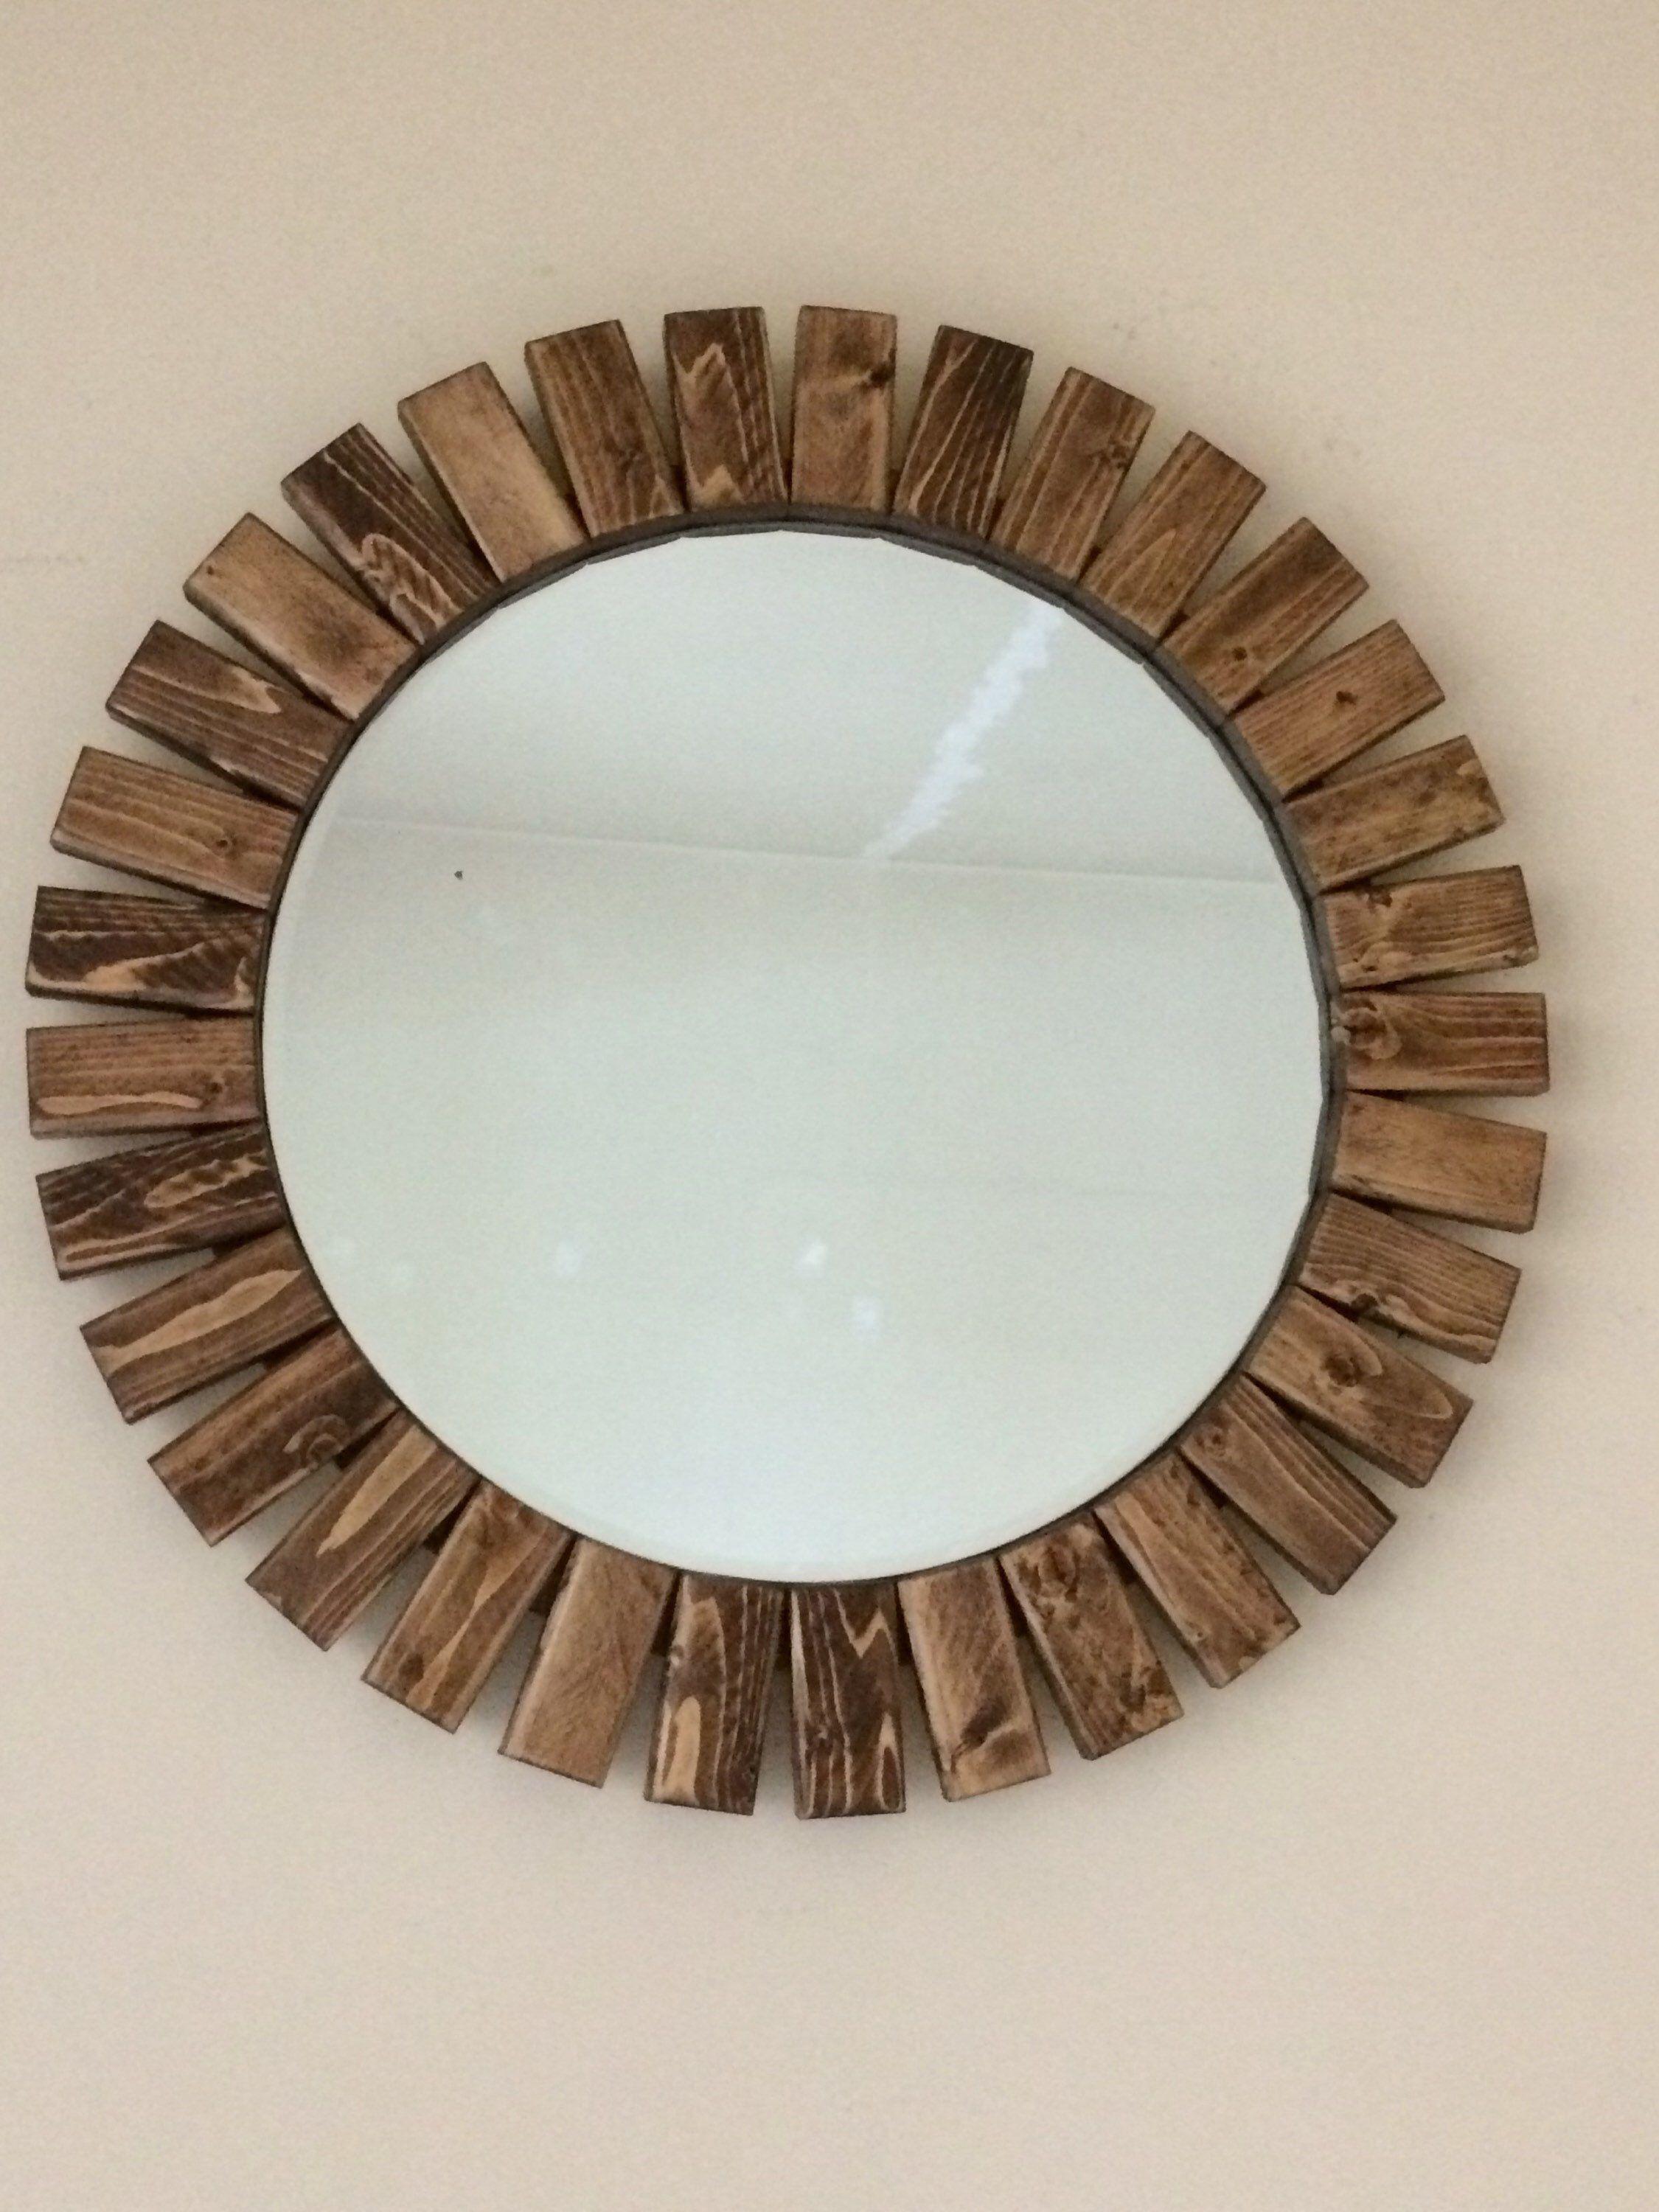 آینه دیواری با قاب چوبی (m223413)|ایده ها